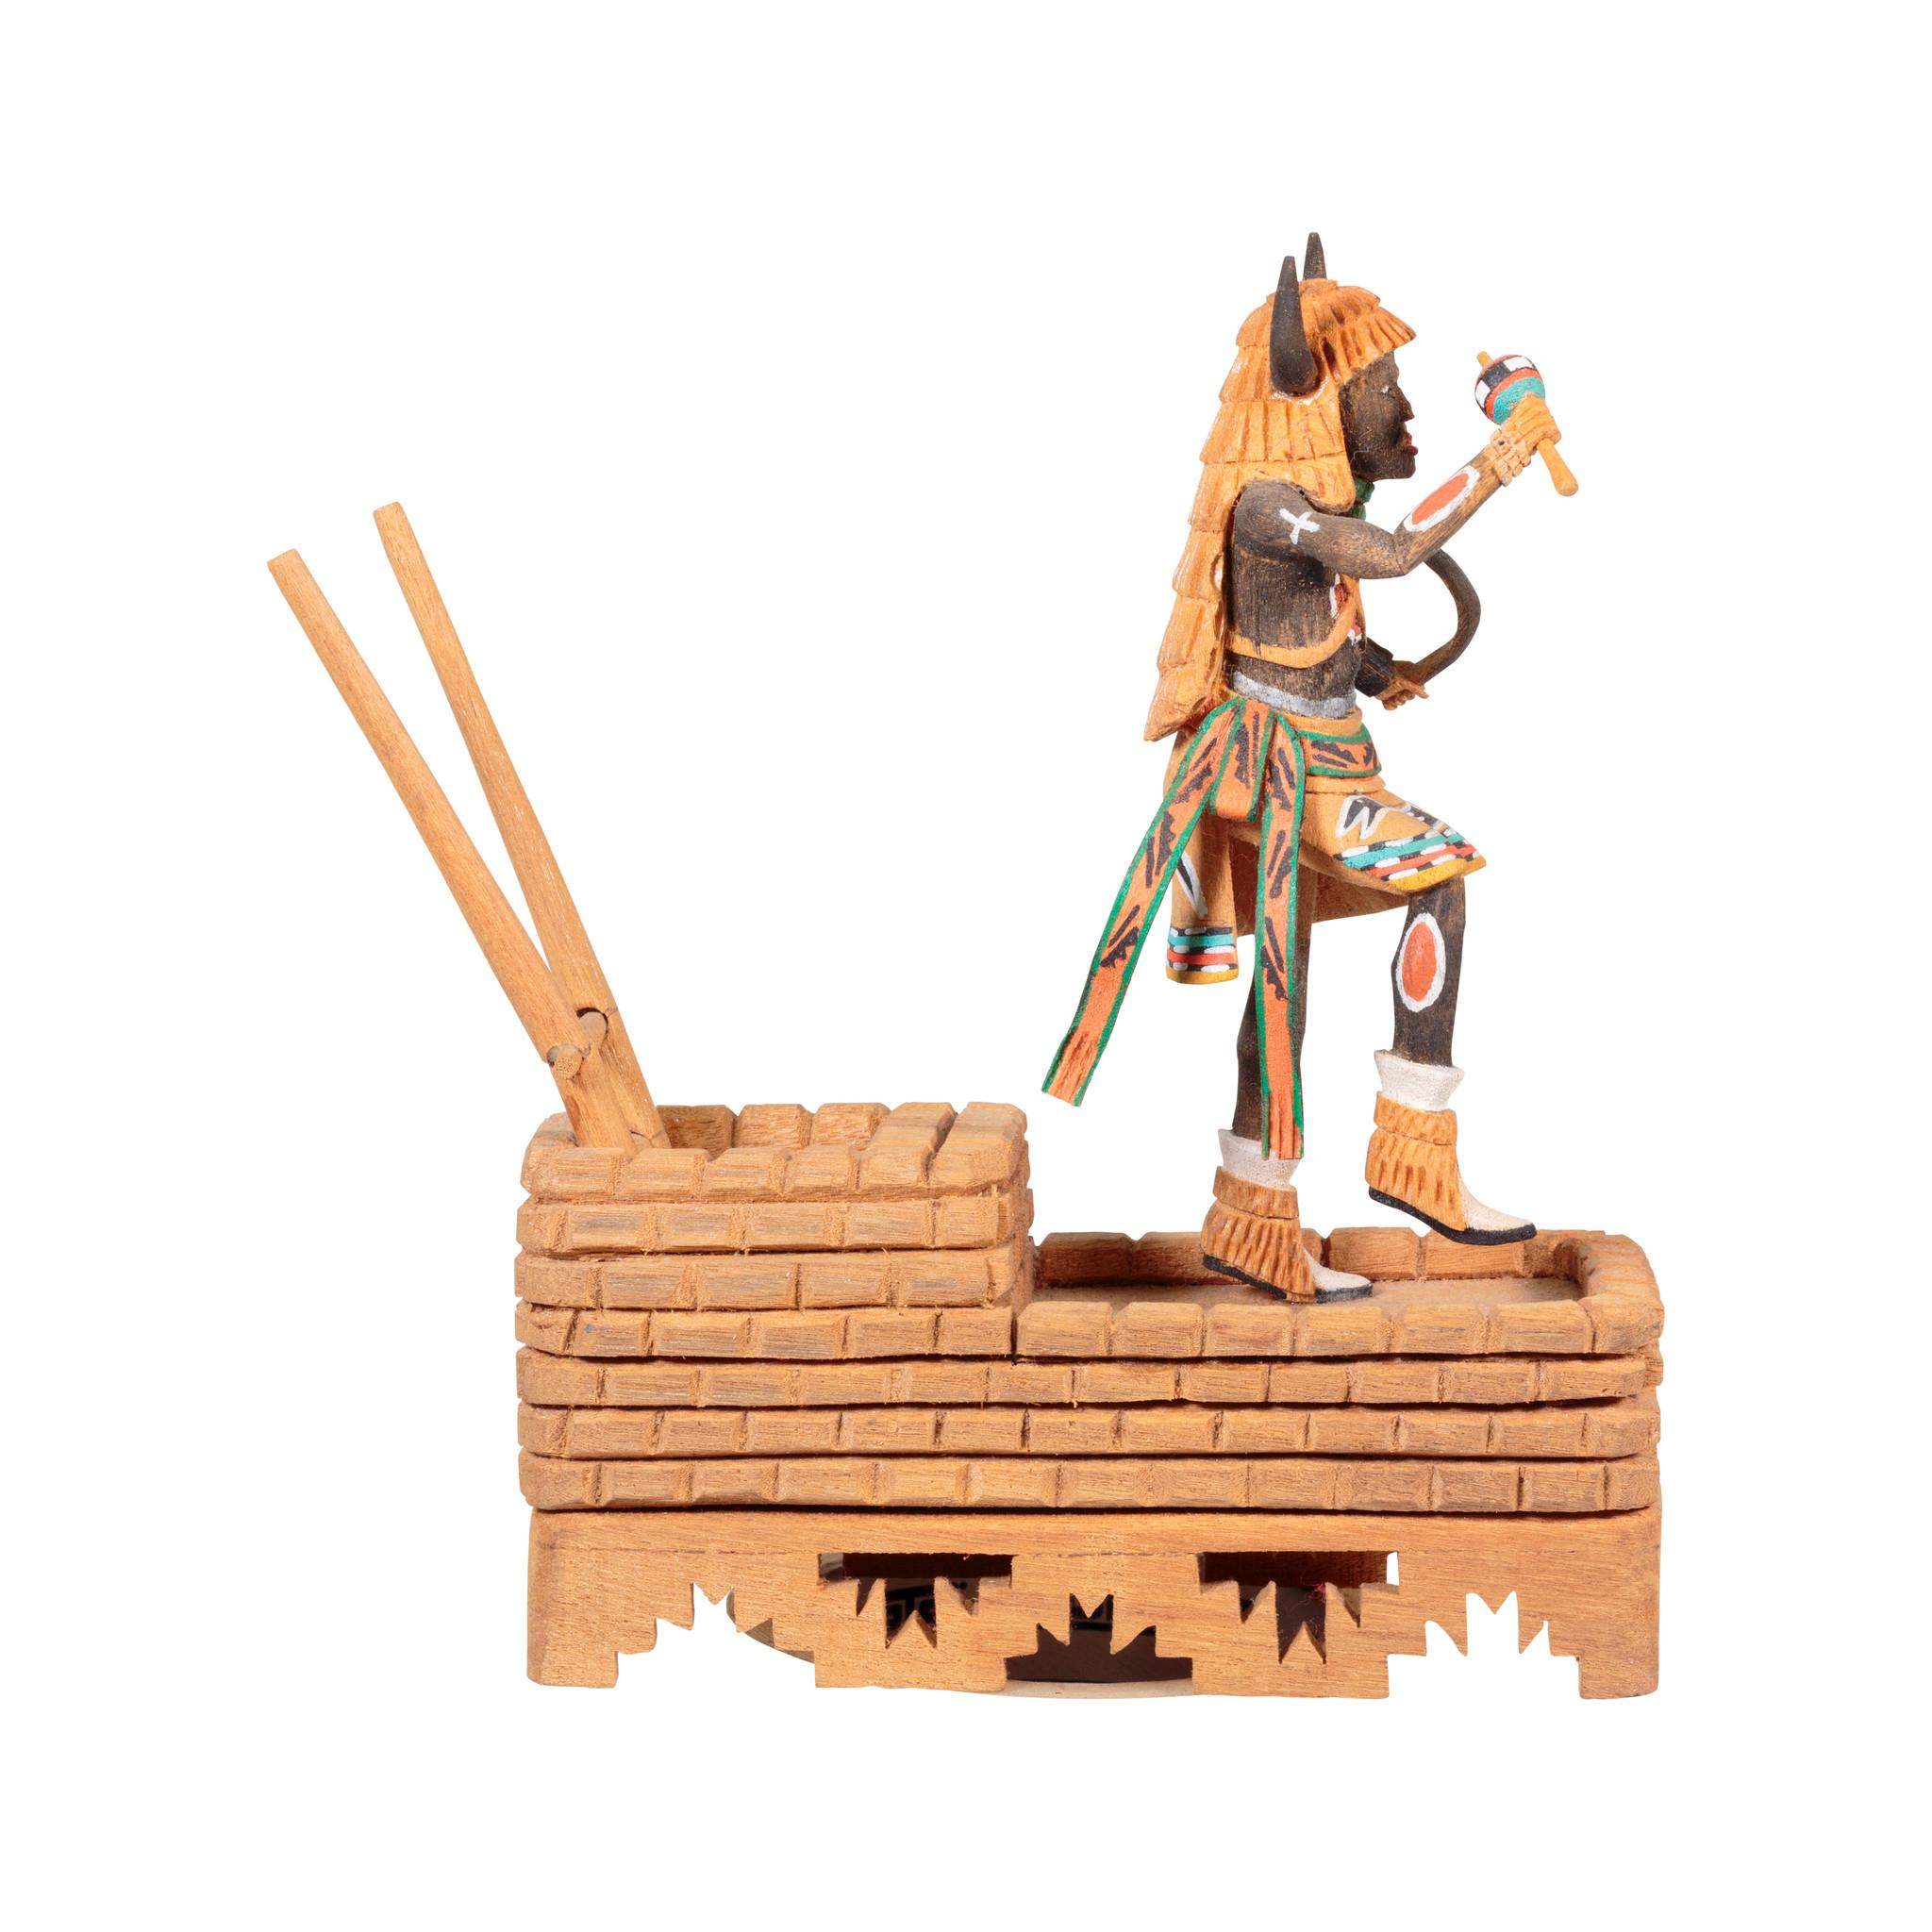 Miniatur-Hopi-Tanz-Kachina mit geschnitzter Kiva von Roy Coolidge III.

Zeitraum: Letzte Hälfte des 20. Jahrhunderts

Herkunft: Hopi

Größe: 8